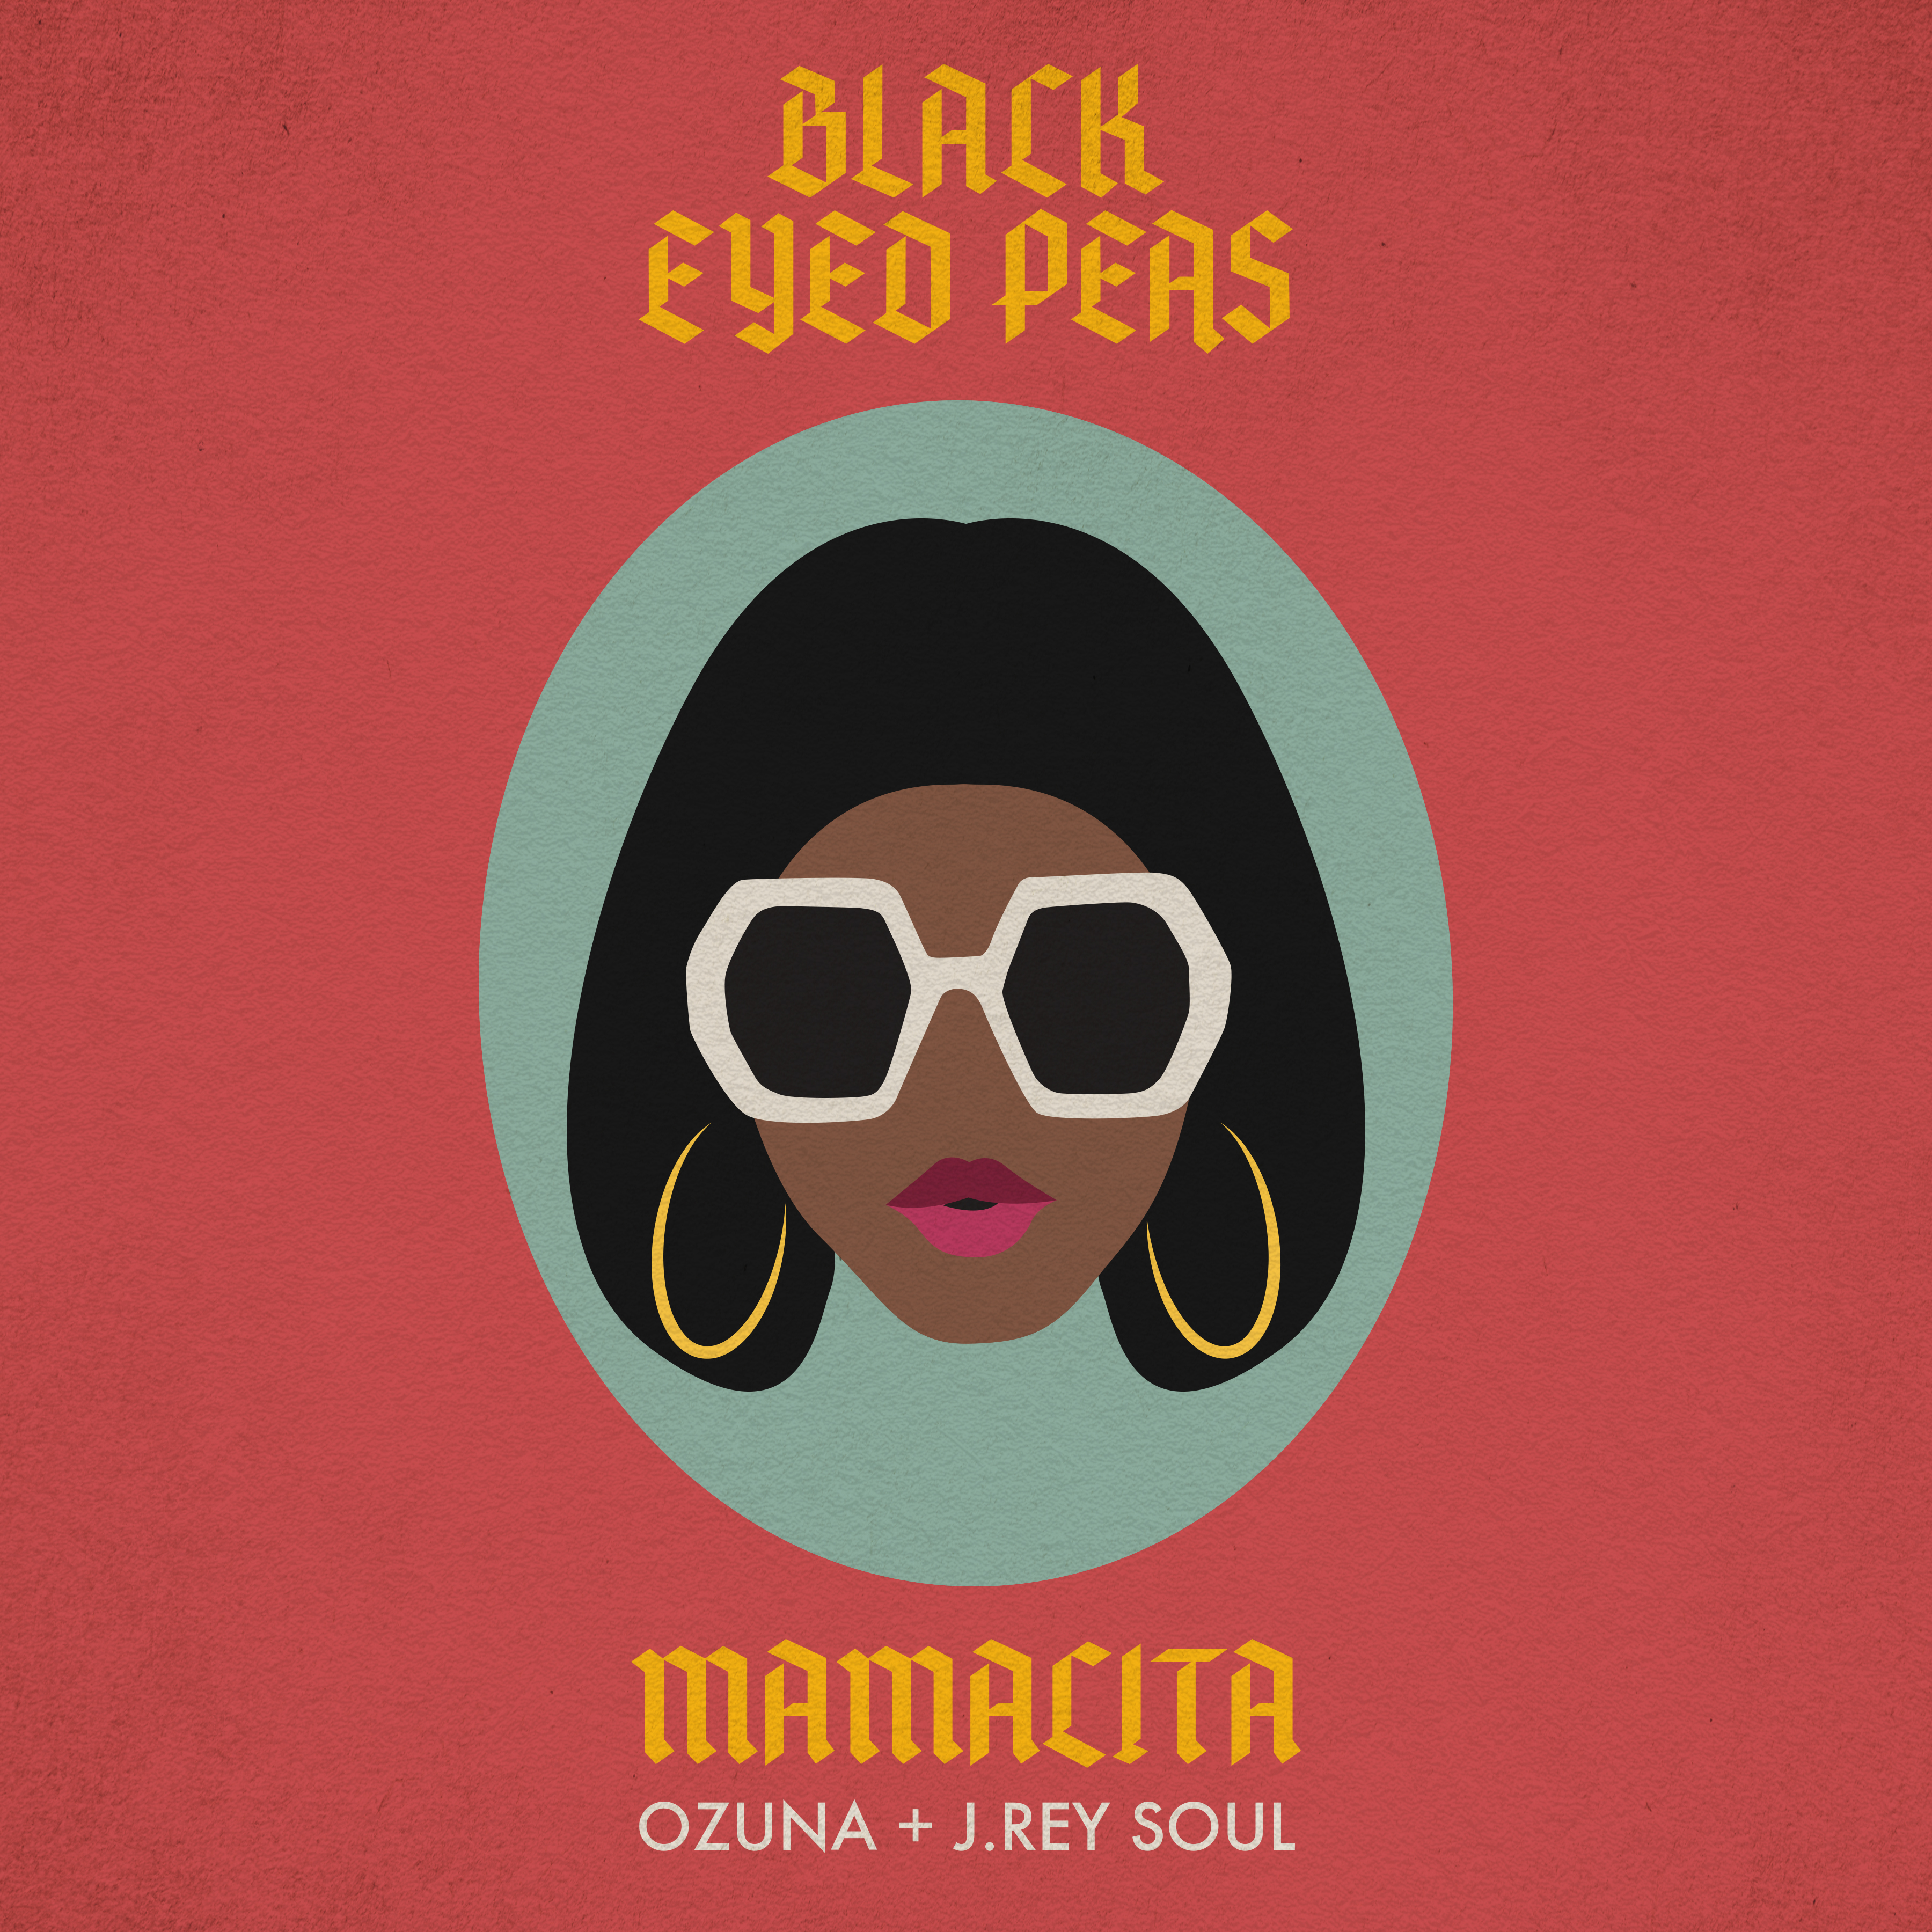 Black Eyed Peas lanzó nuevo tema en compañía de Ozuna y J.Rey Soul